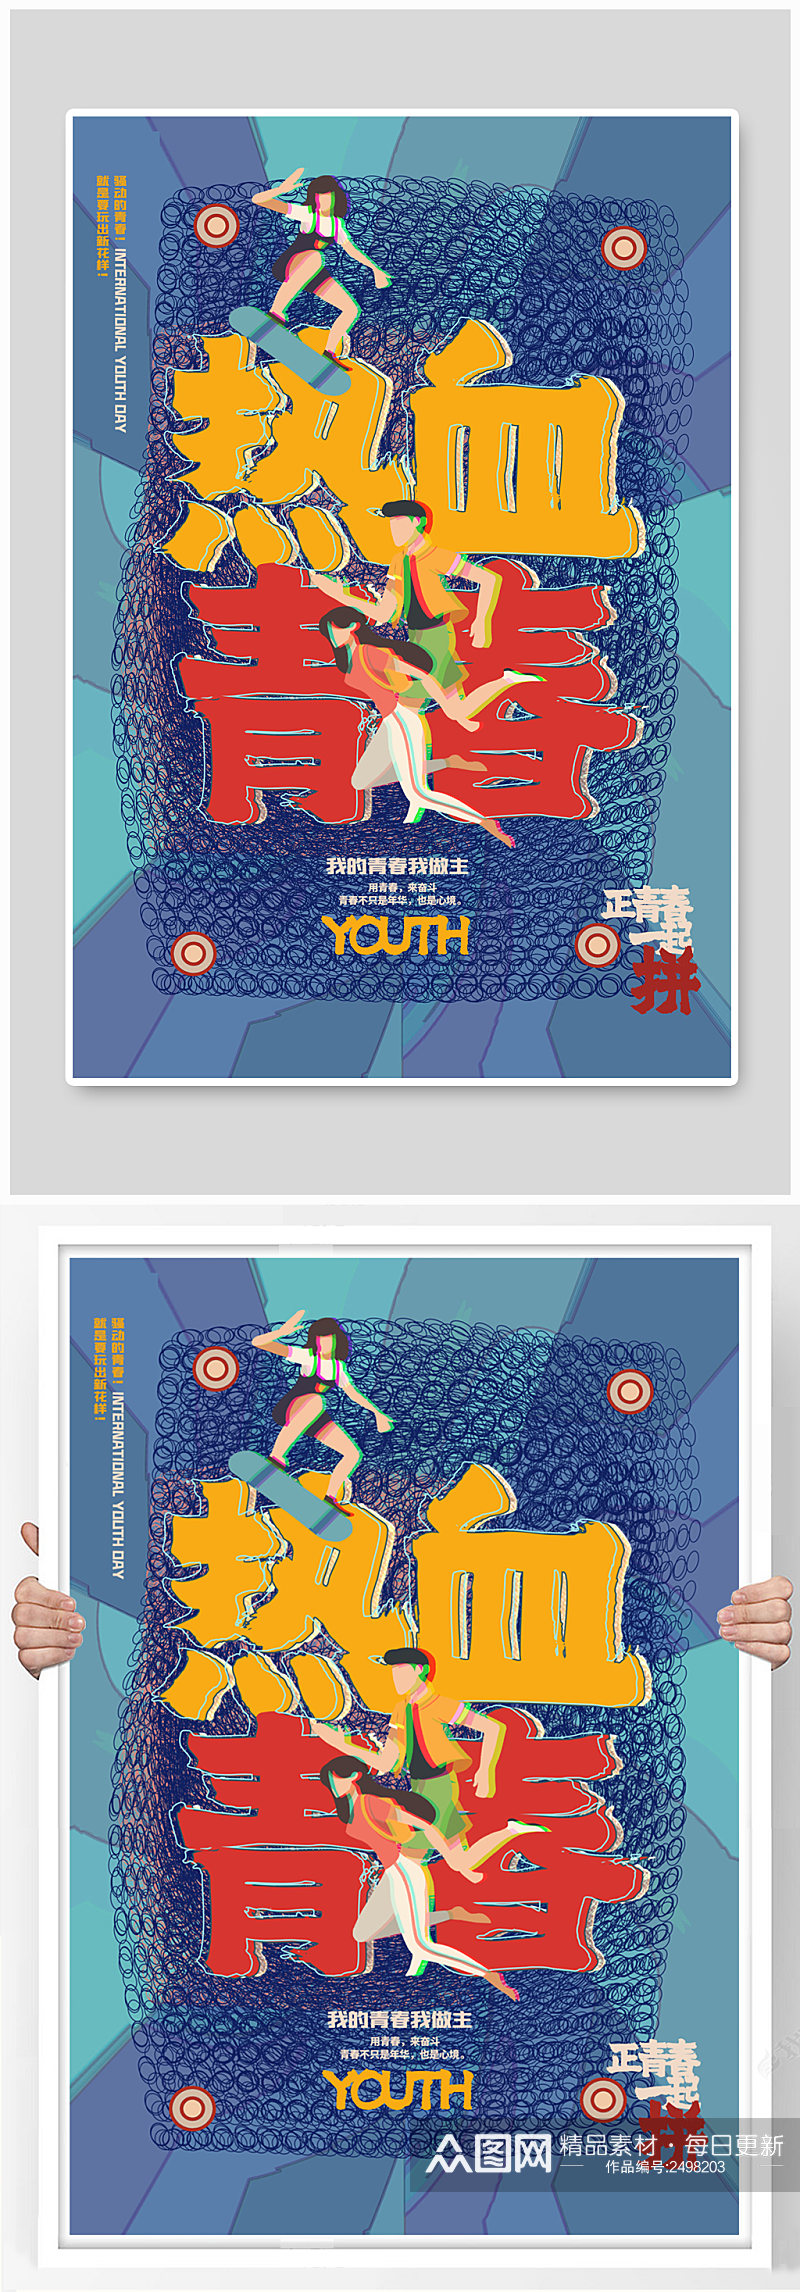 创意卡通热血青春国际青年节宣传海报素材